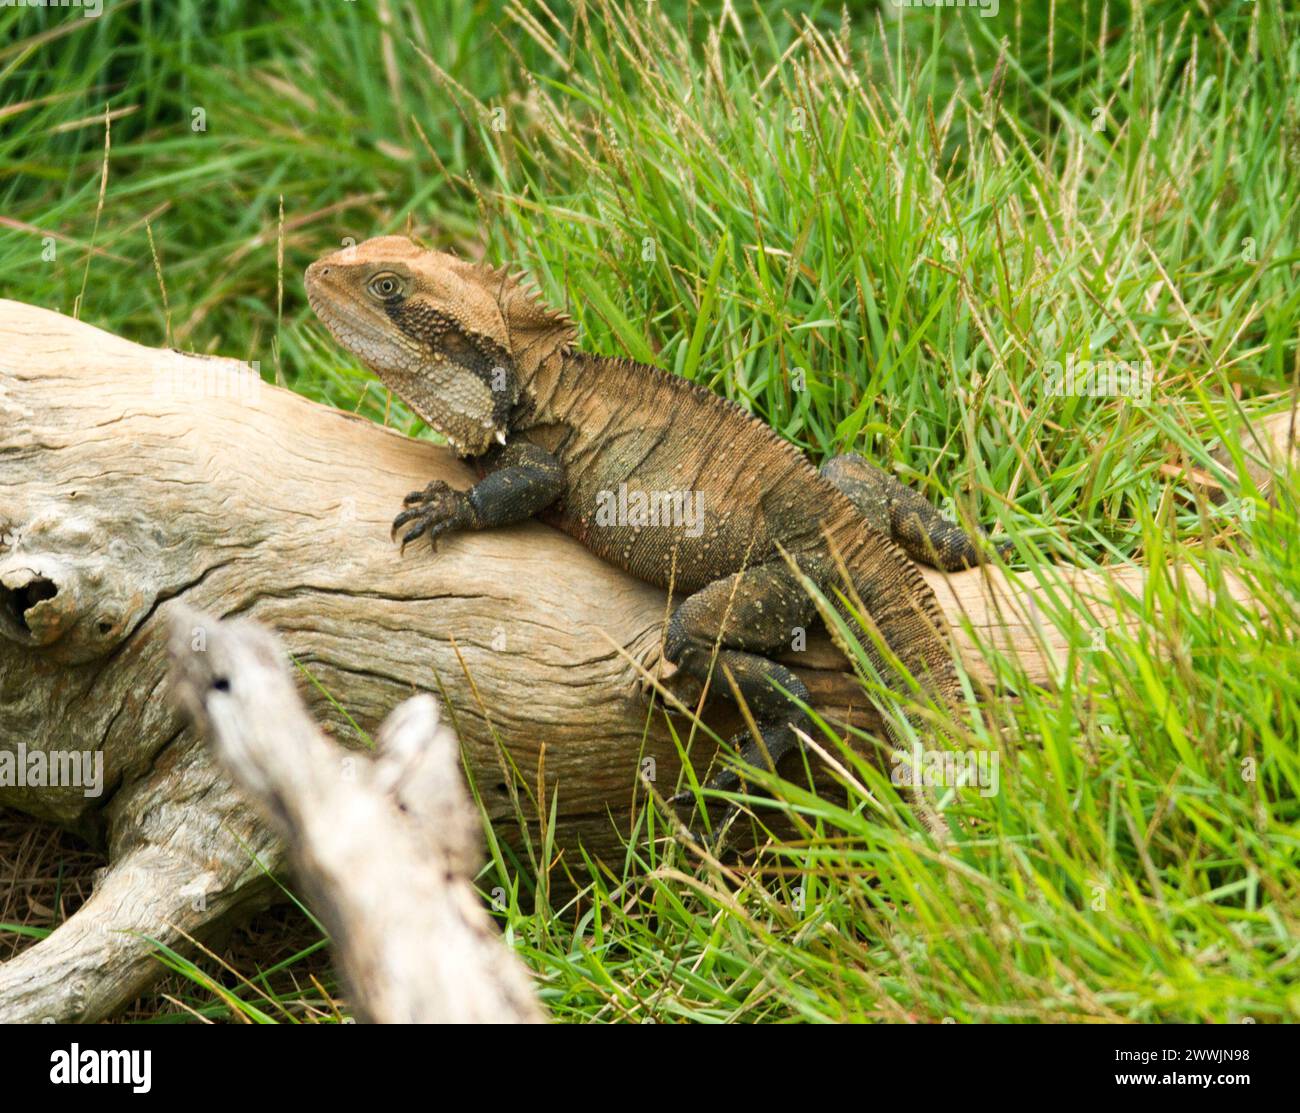 Dragon d'eau de l'est, Physignathus lesueurii, un lézard australien, bronzant sur une bûche ourlée d'herbe vert émeraude dans un parc urbain du Queensland. Banque D'Images